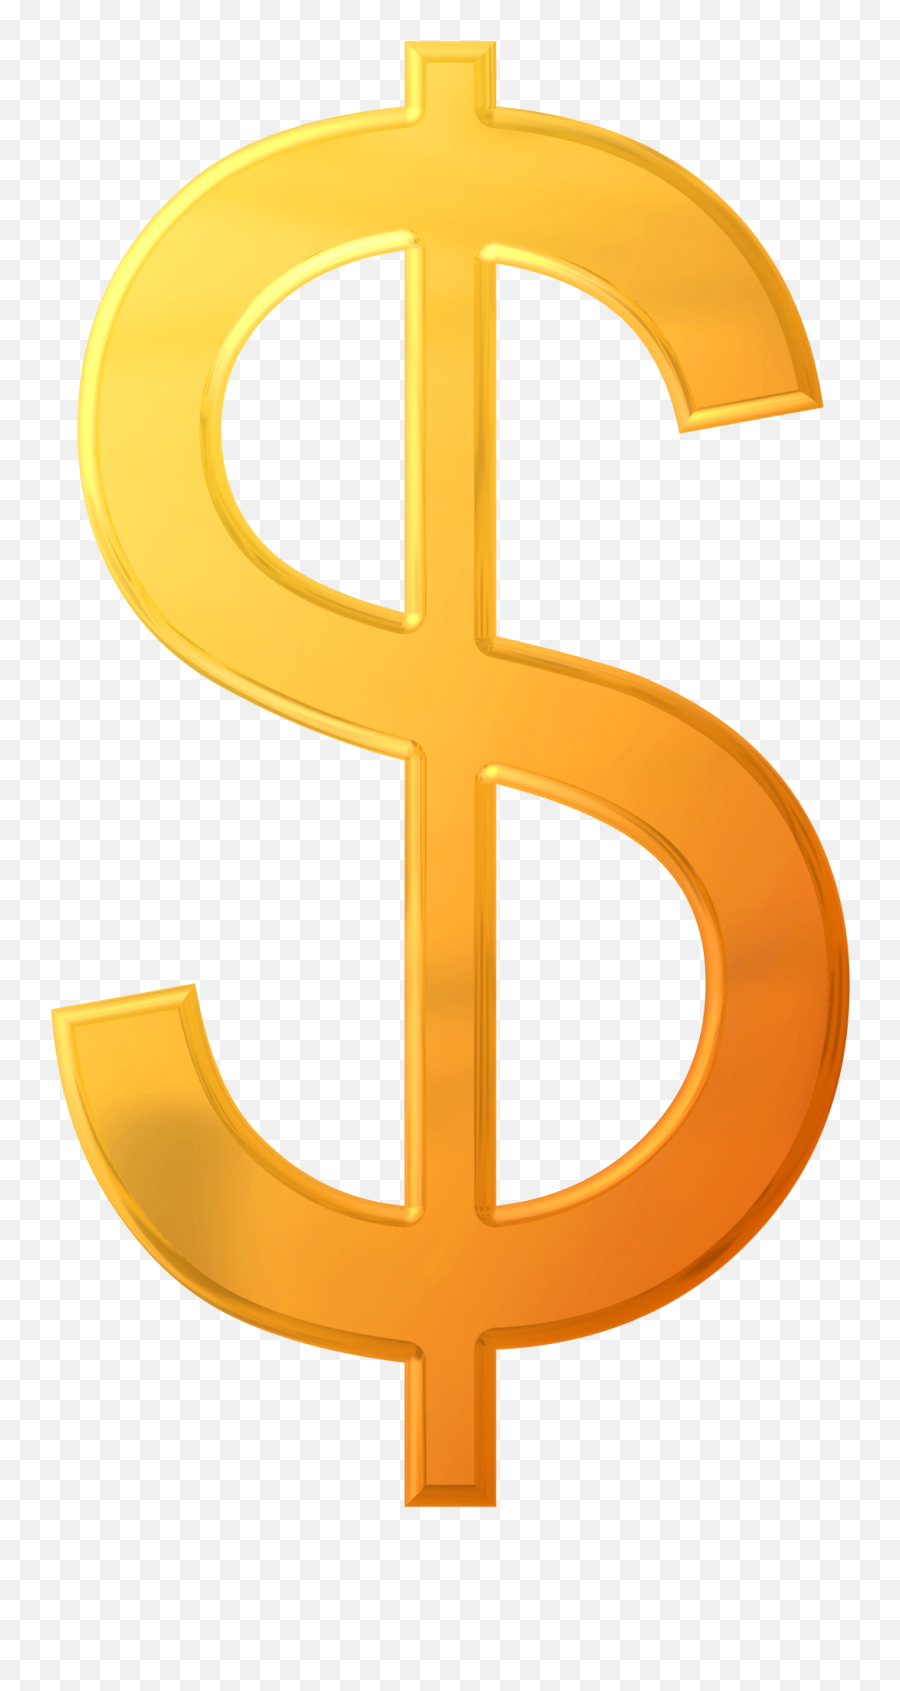 Download Dollar Sign Png Image For Free - Dollar Sign Transparent Png,Money Transparent Background